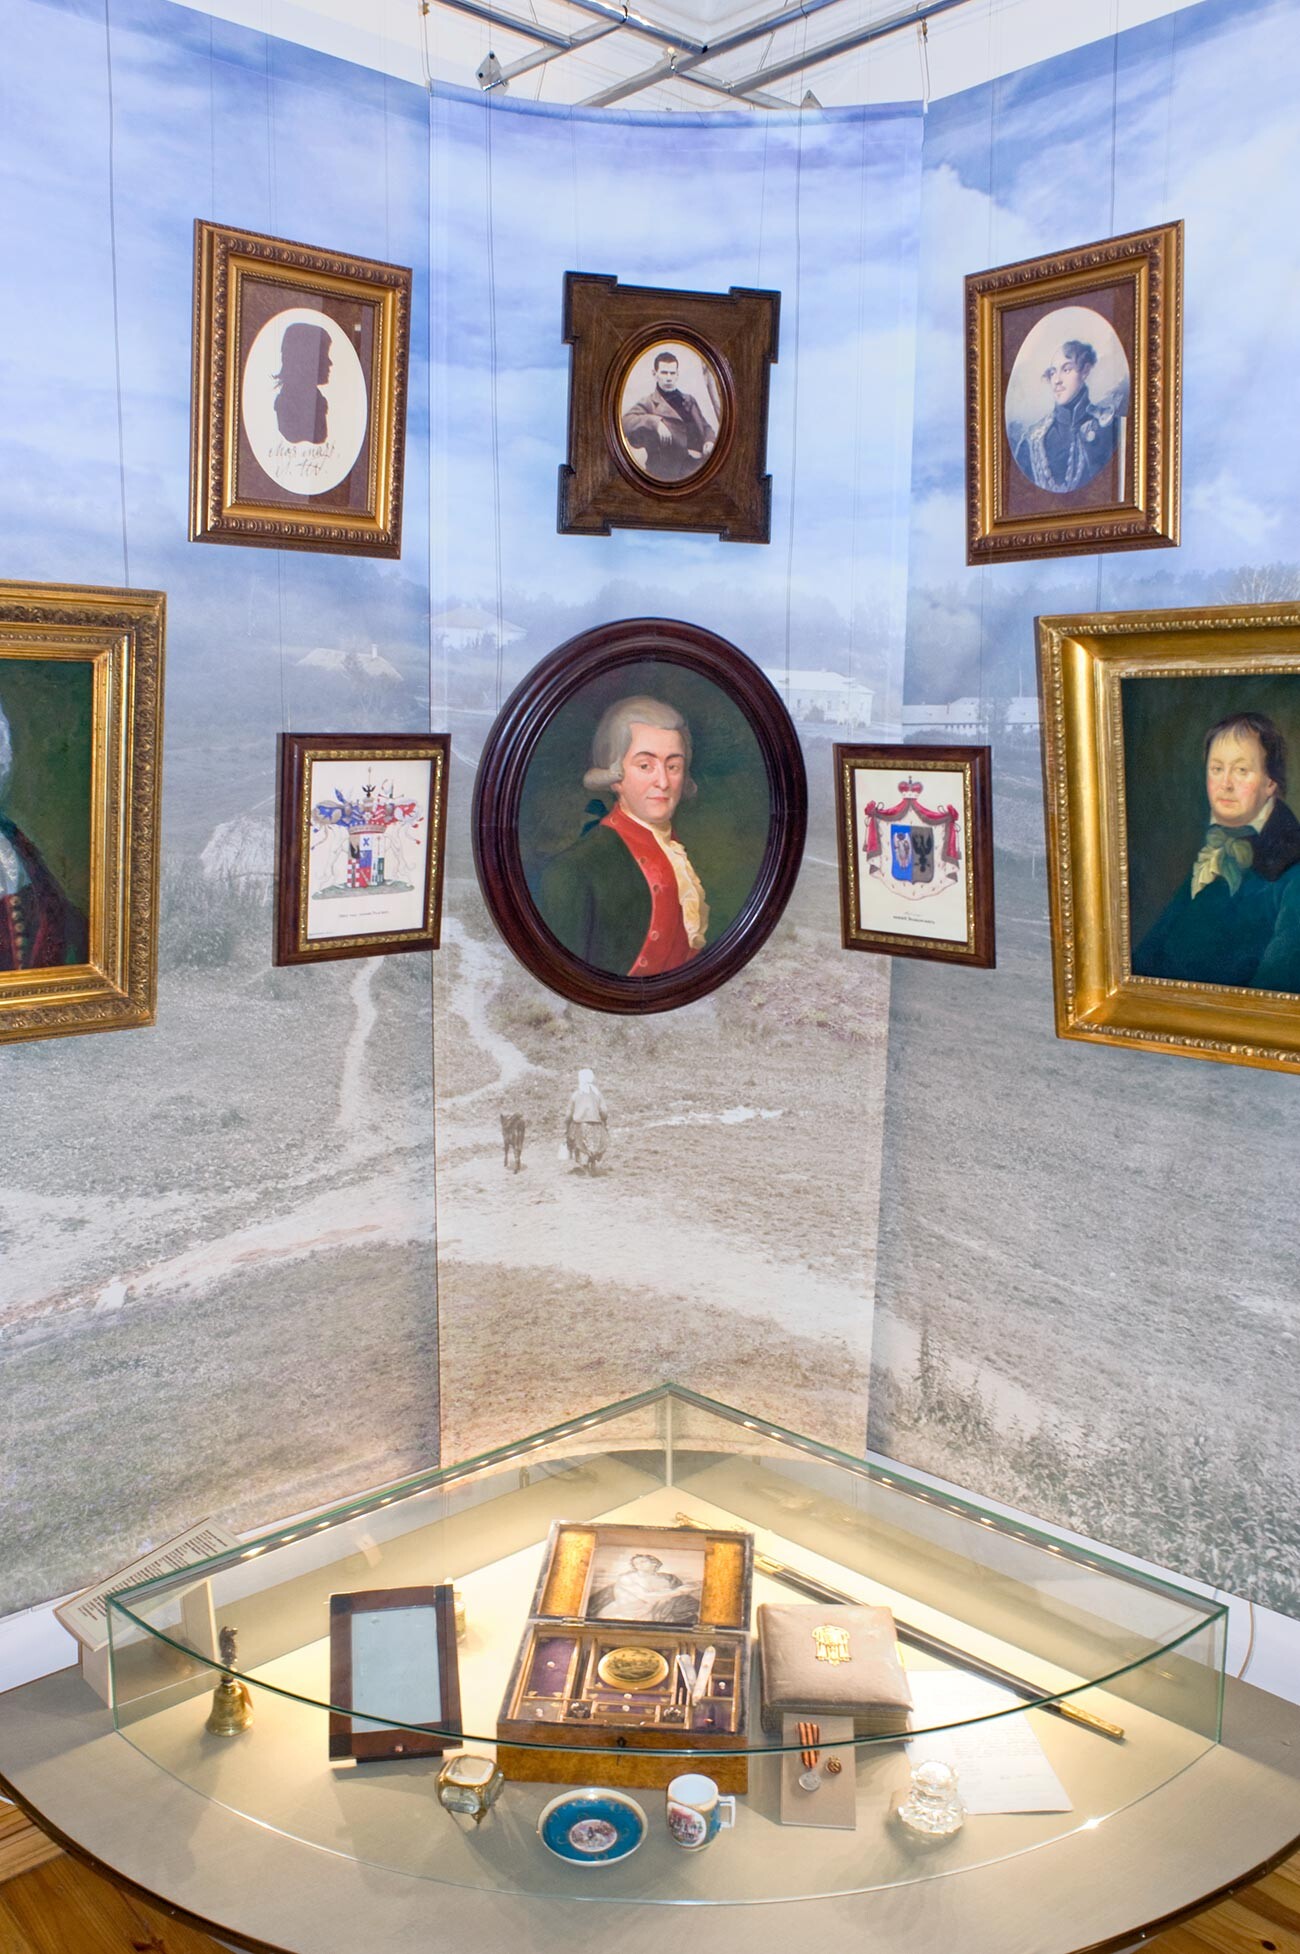 Casa del jefe de estación, interior. Exposición en el museo de retratos familiares y vitrina con los efectos personales de Tolstói. 10 de agosto de 2013.